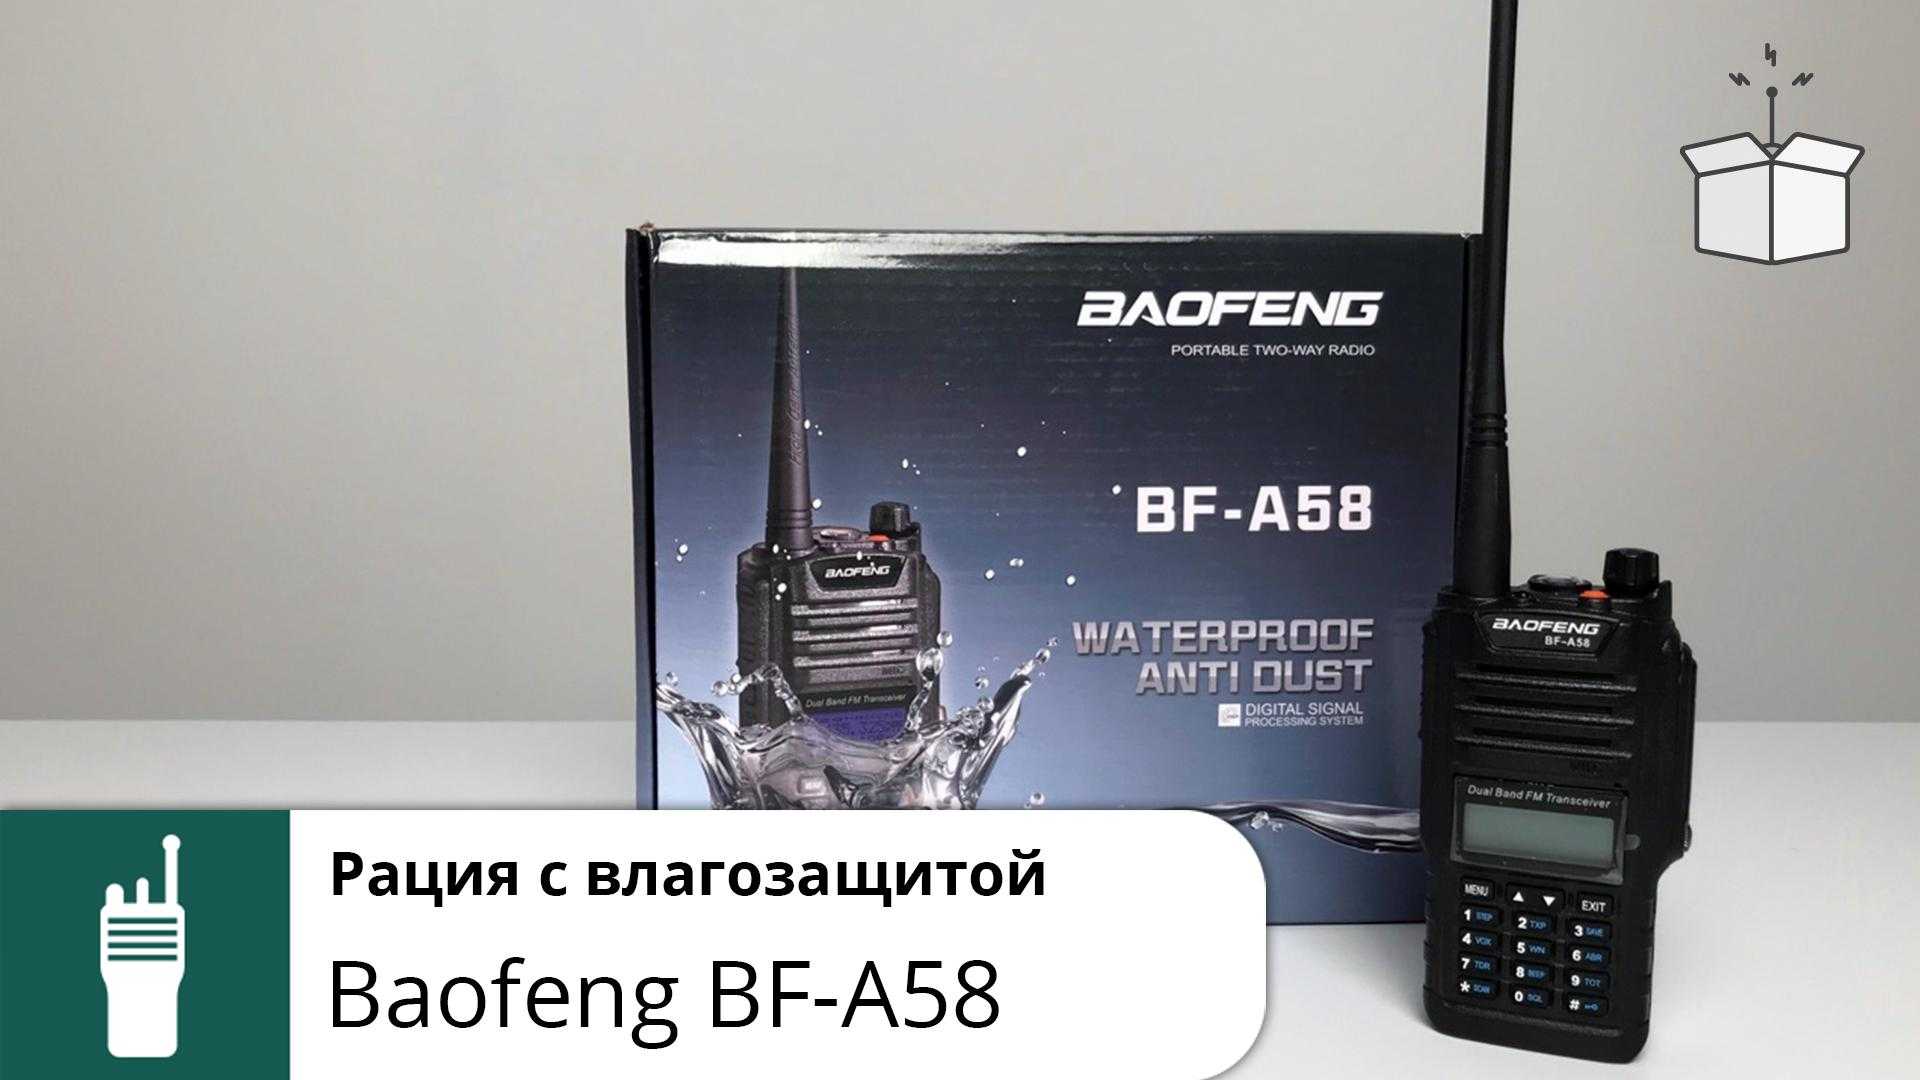 Baofeng bf a58 инструкция на русском - вэб-шпаргалка для интернет предпринимателей!